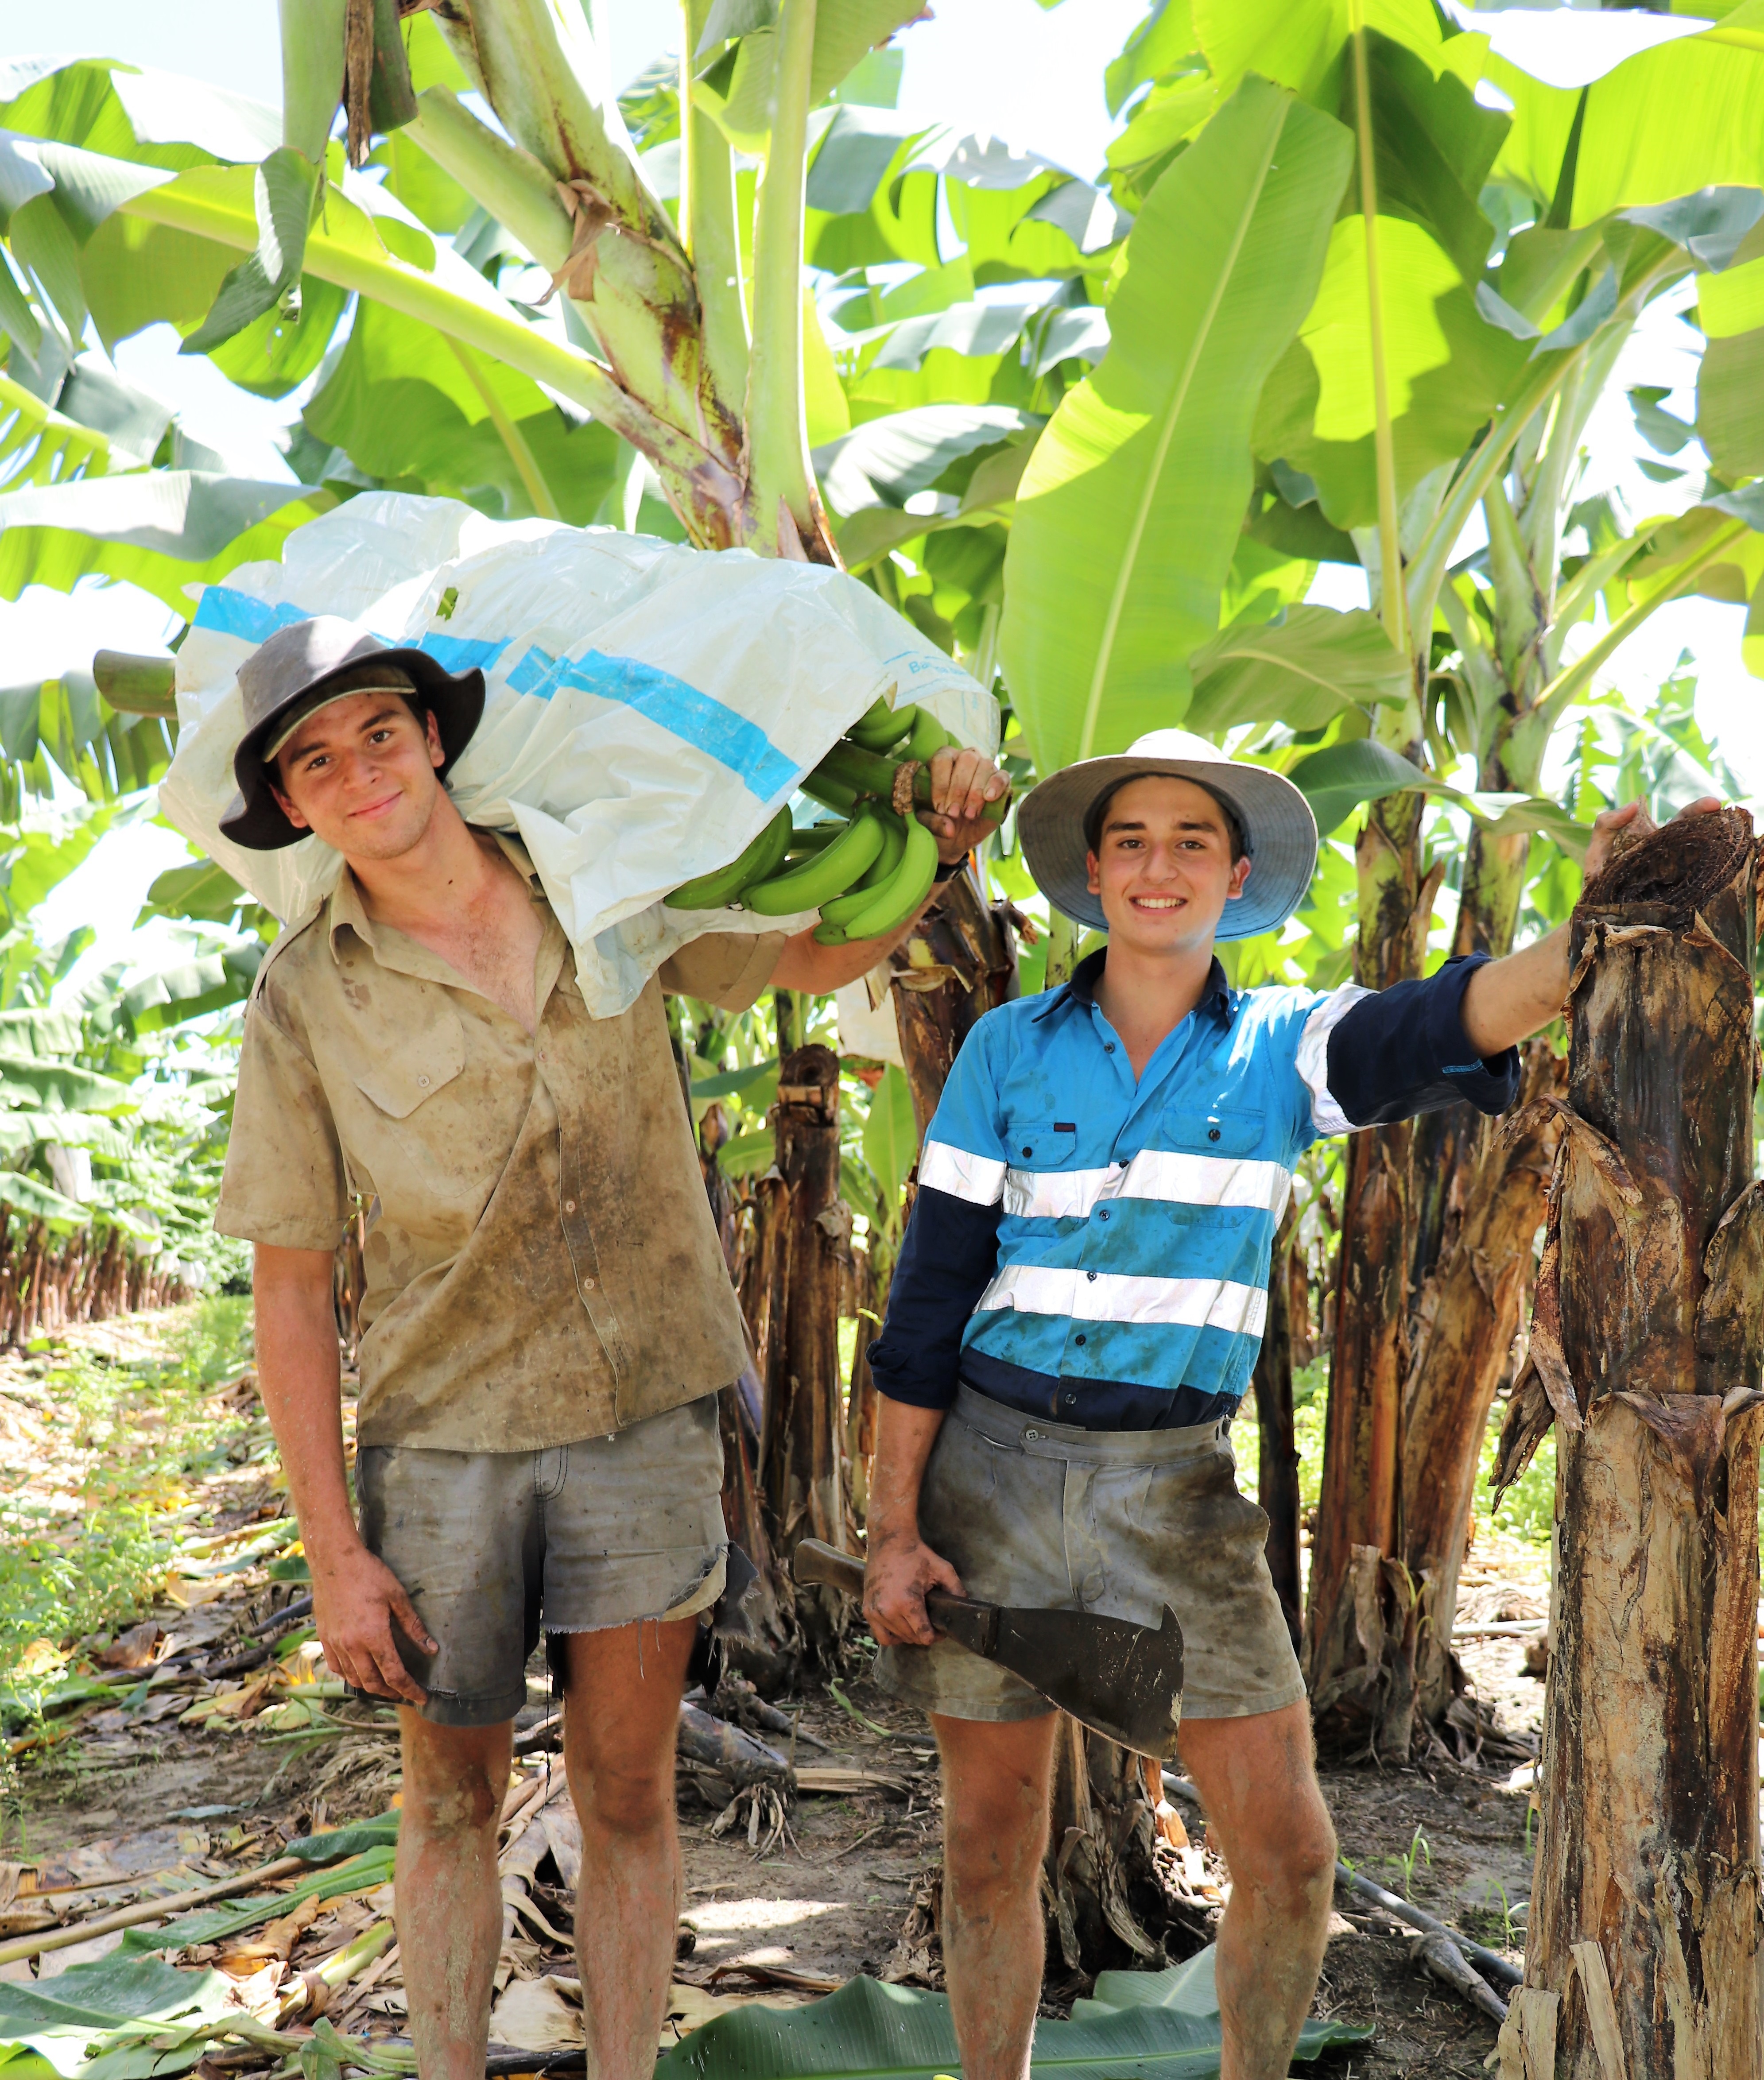 Stuart (left) and Angus on their family’s Tully banana farm.